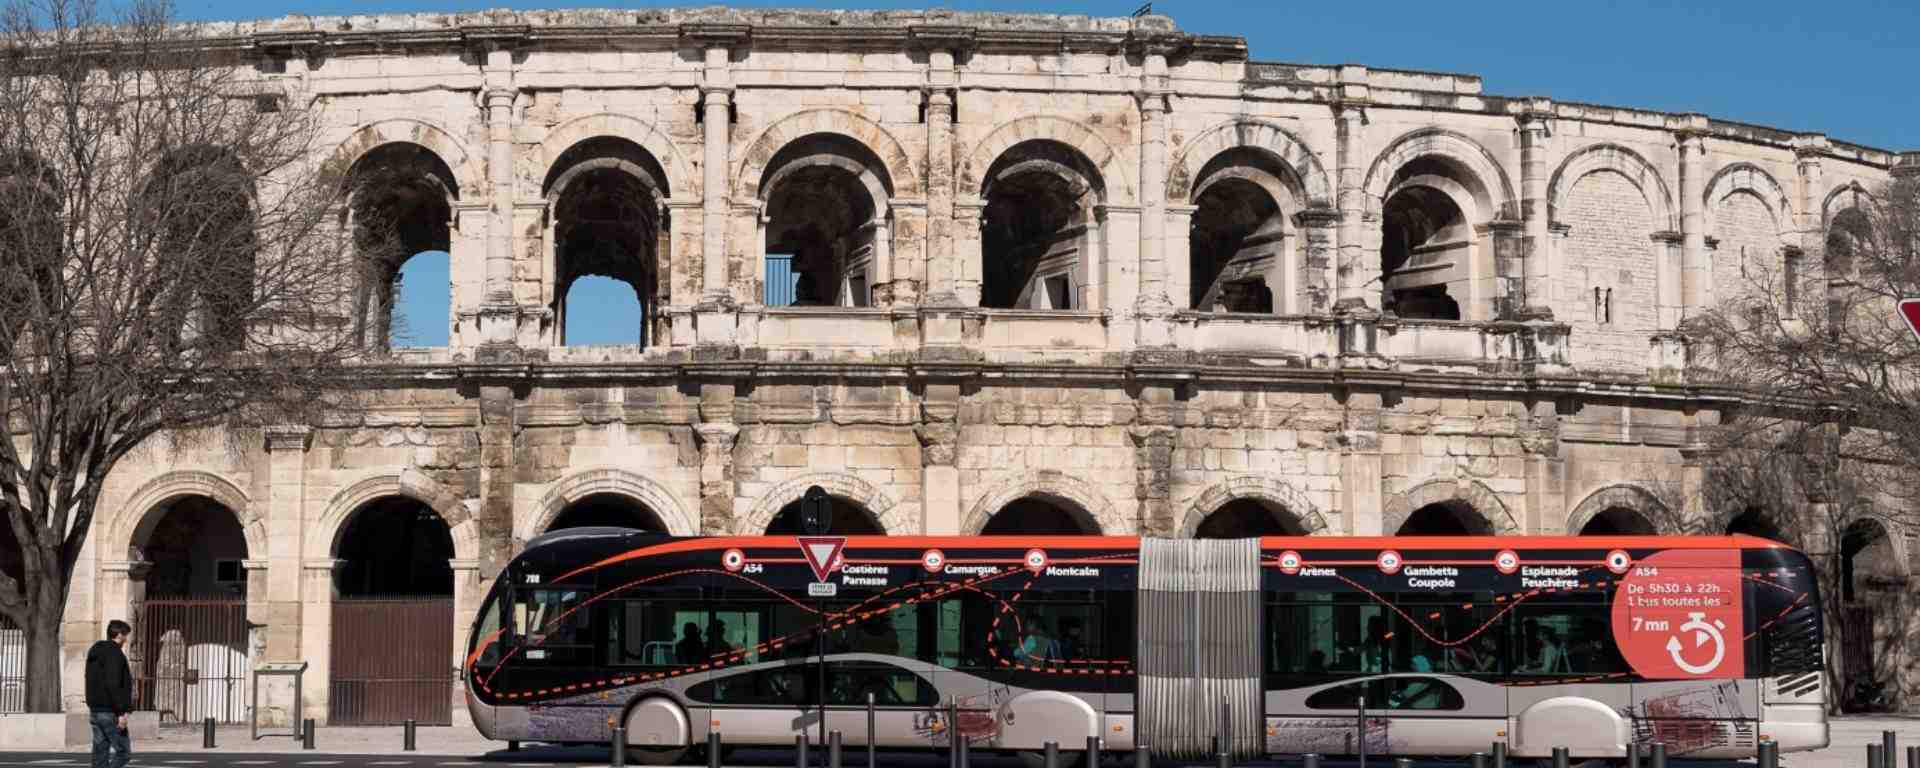 Nîmes Métropole développe son réseau de transports en commun